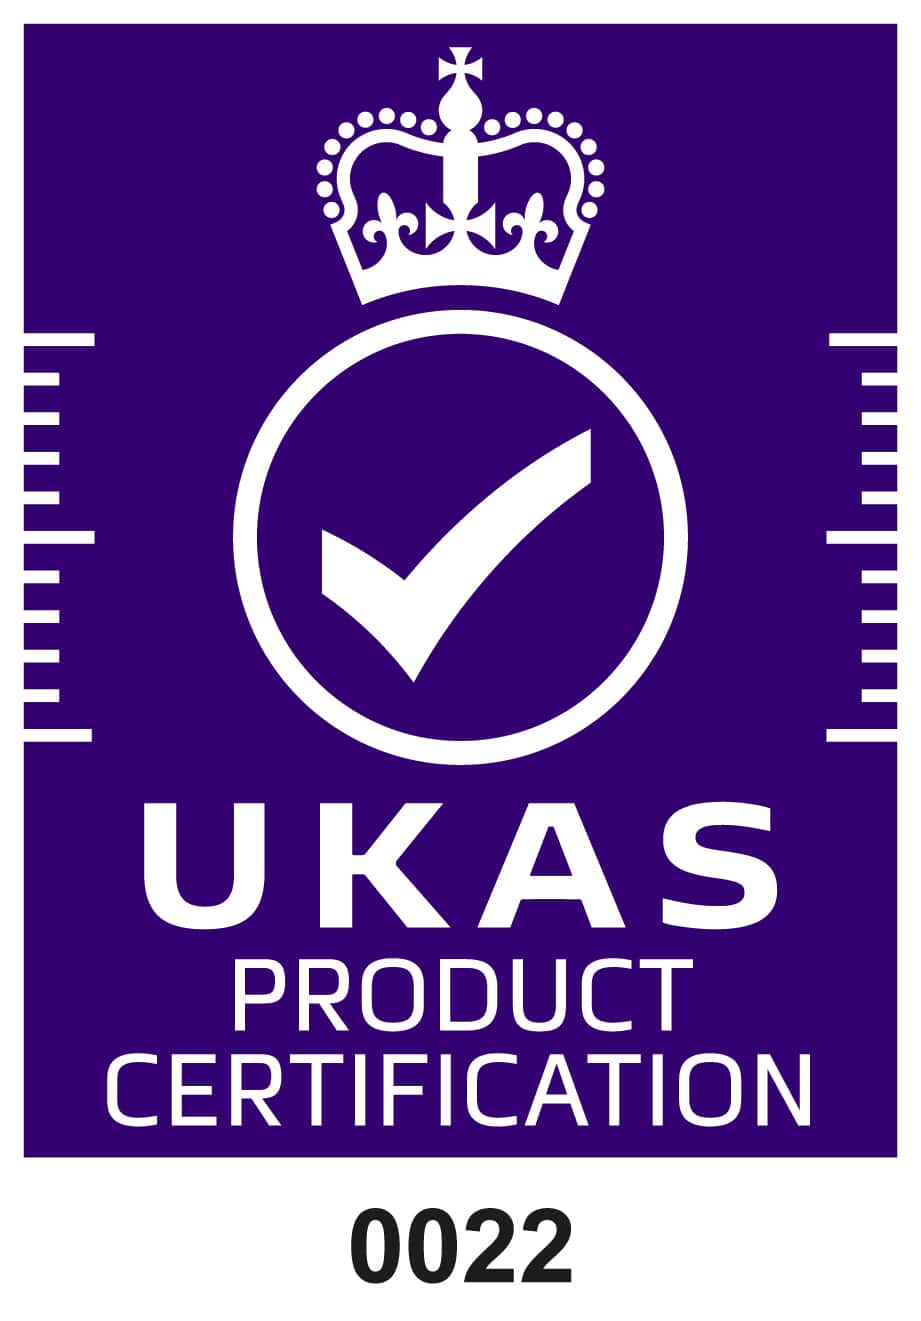 Ukas akreditacijski simbol bijeli na certifikatu ljubičastog proizvoda